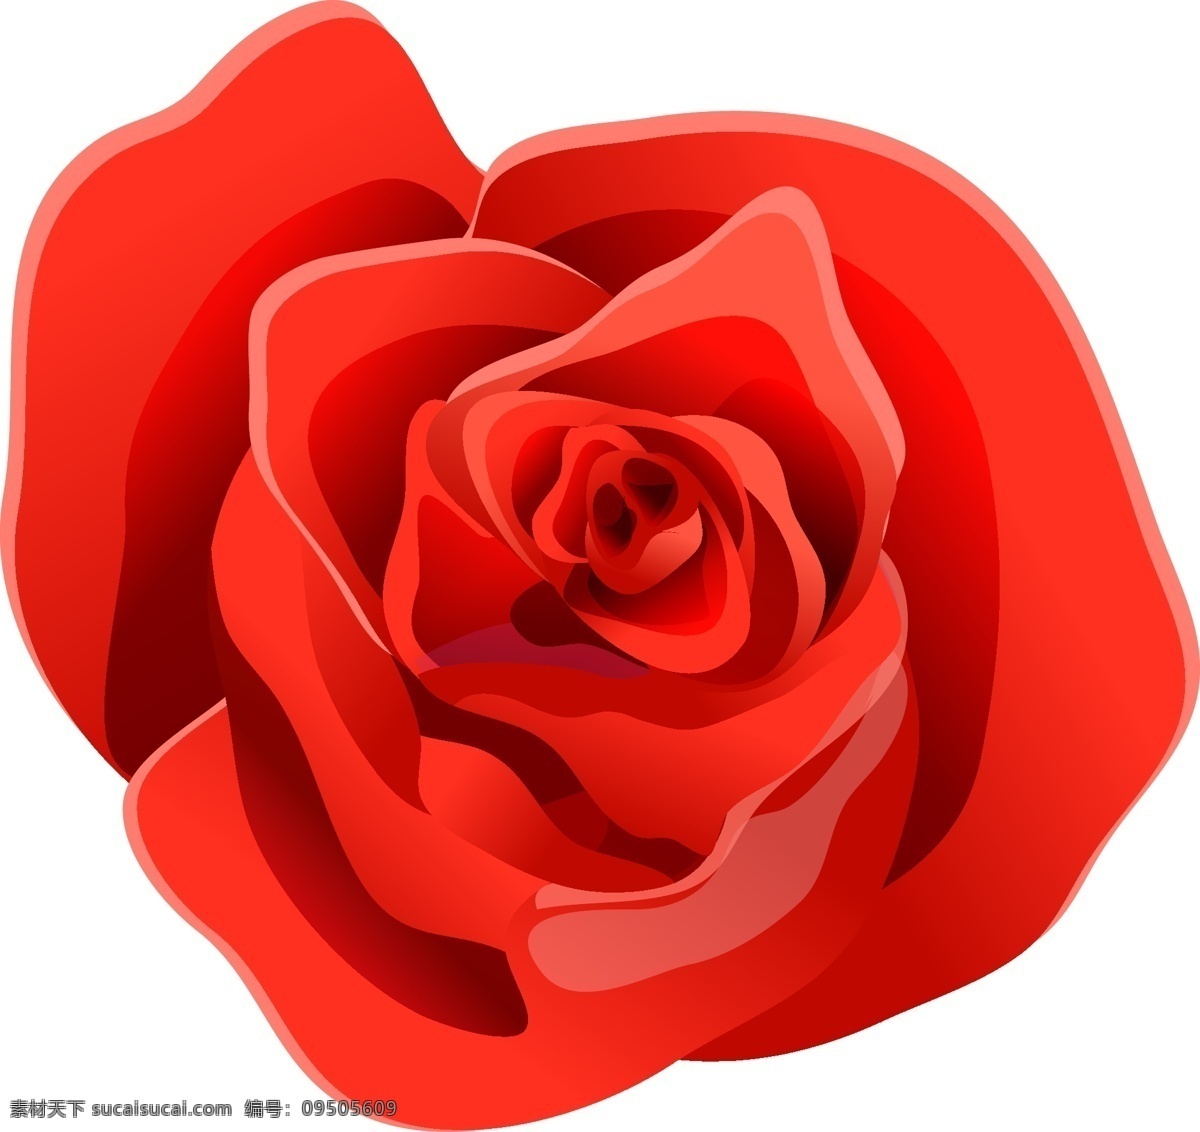 玫 红色 卡通 风格 矢量 花朵 玫红色花朵 卡通风格花朵 矢量花朵 玫瑰花 情人花朵 情人玫瑰 情人节玫瑰